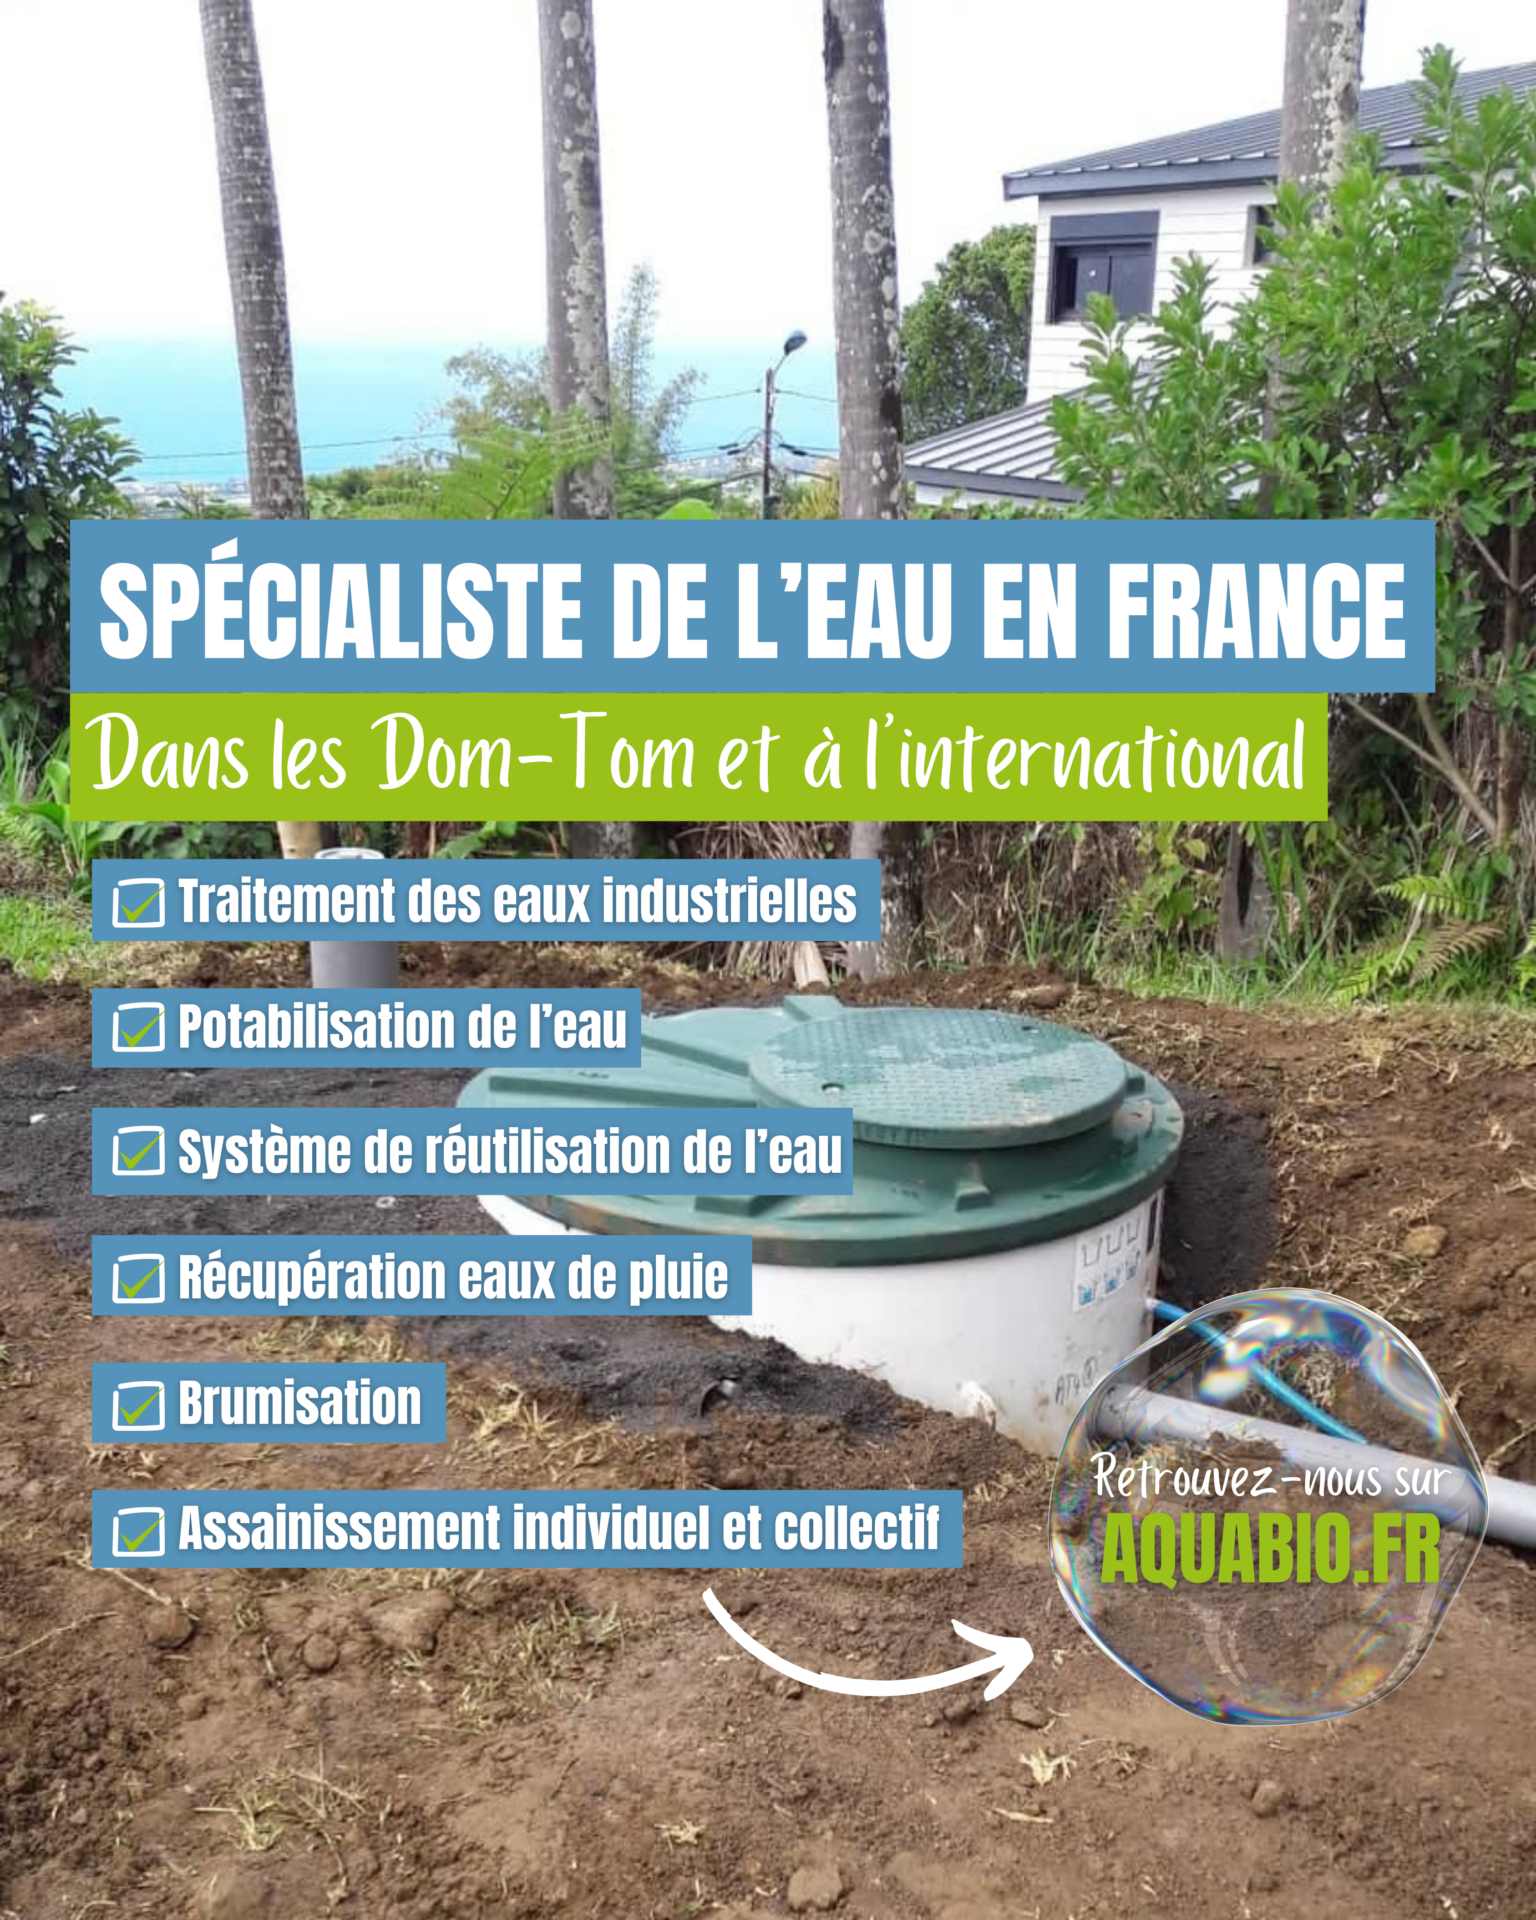 Spécialiste de l’eau en France